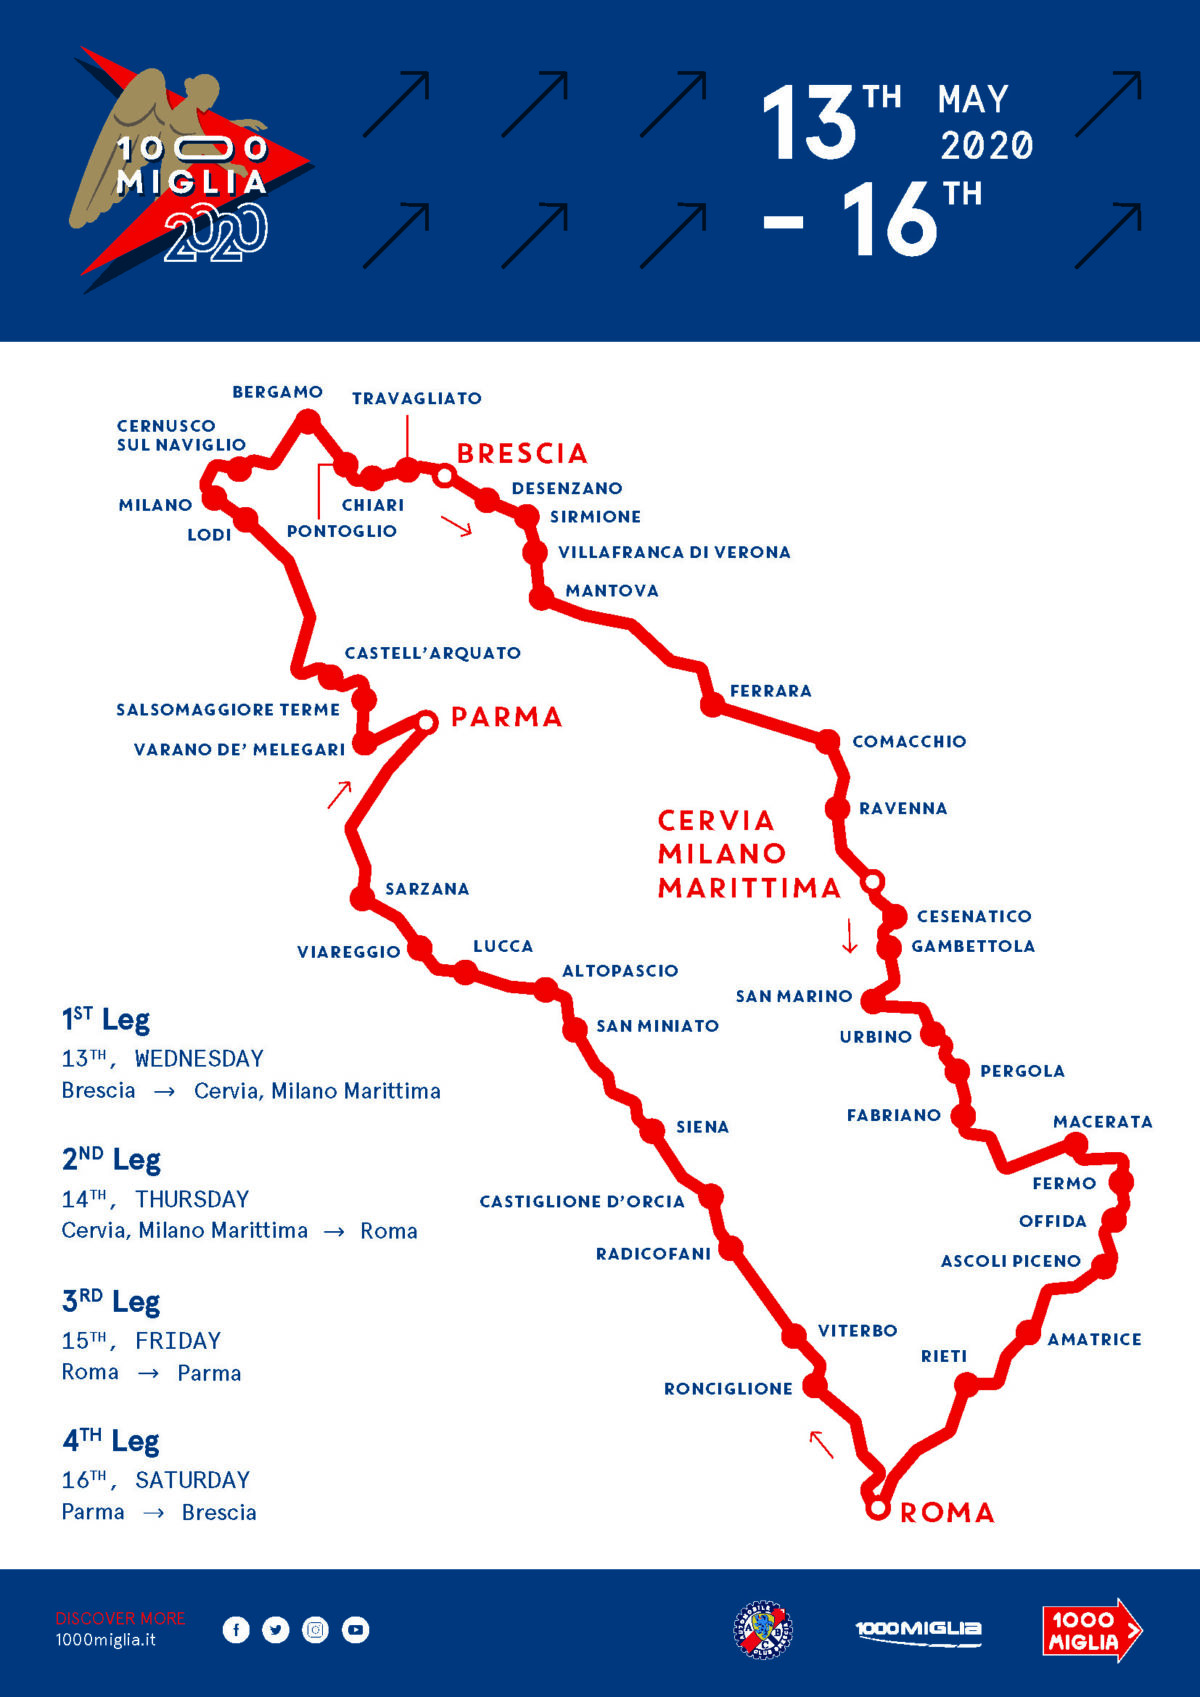 1000 Miglia 2020 - The Route - 1000 Miglia